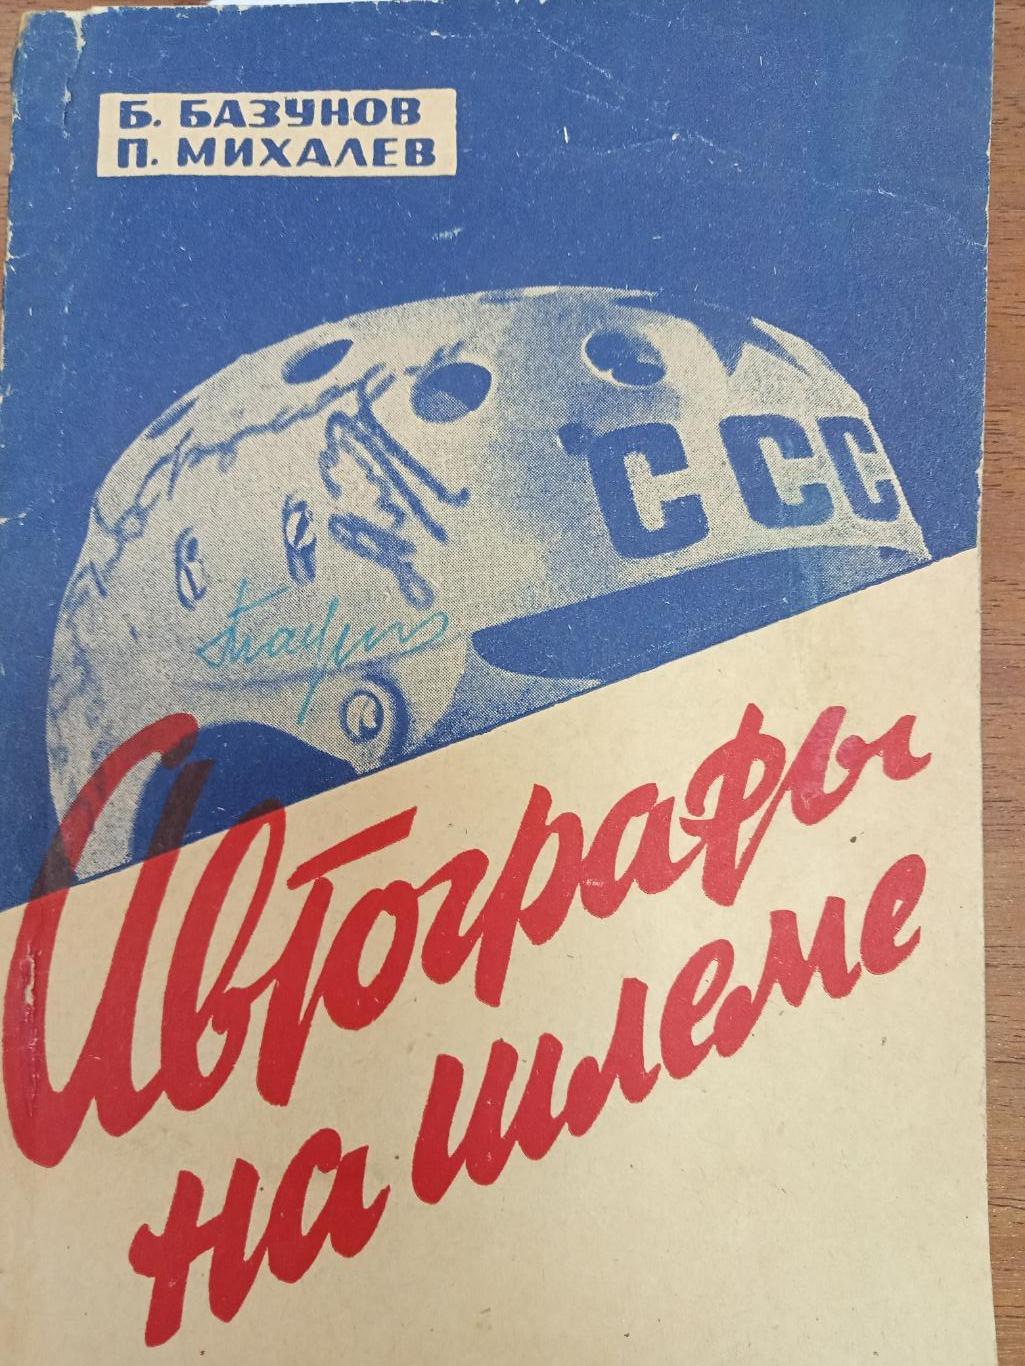 Хоккей. Б.Базунов П.Михалев. Автографы на шлеме. 1967.